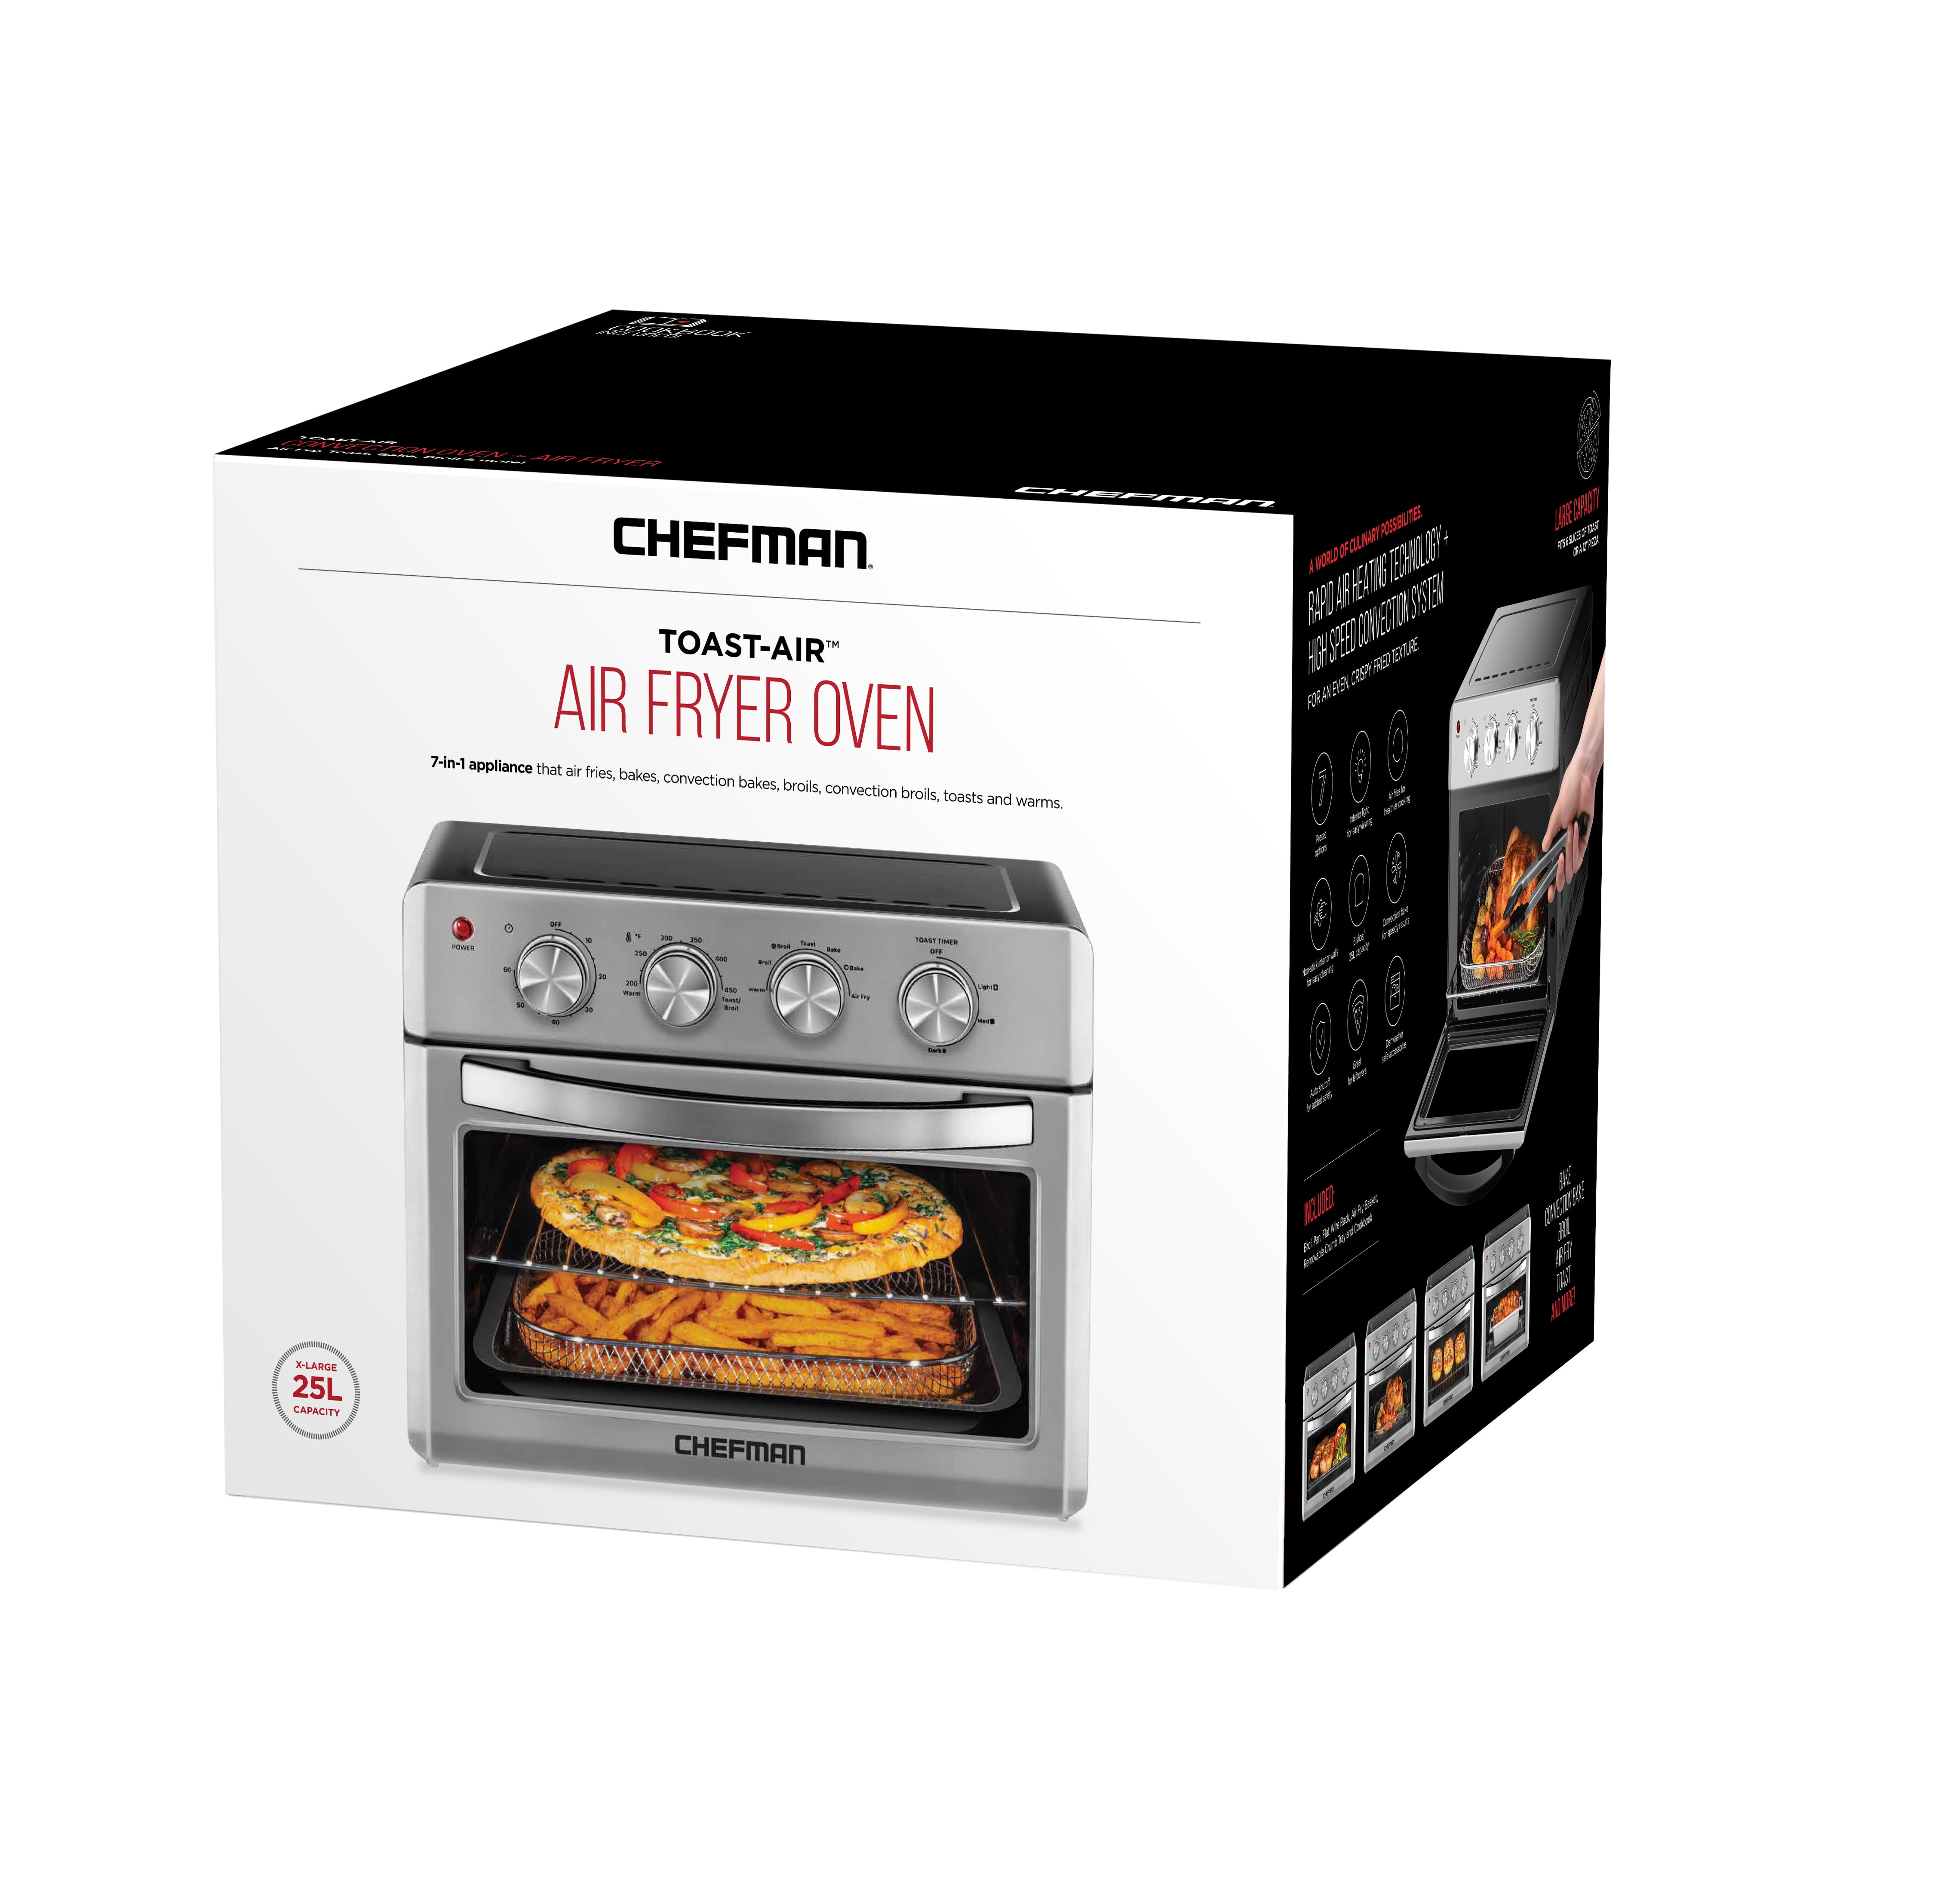 Chefman Auto-Stir Air Fryer Convection Oven, 11.6 qt - Kroger